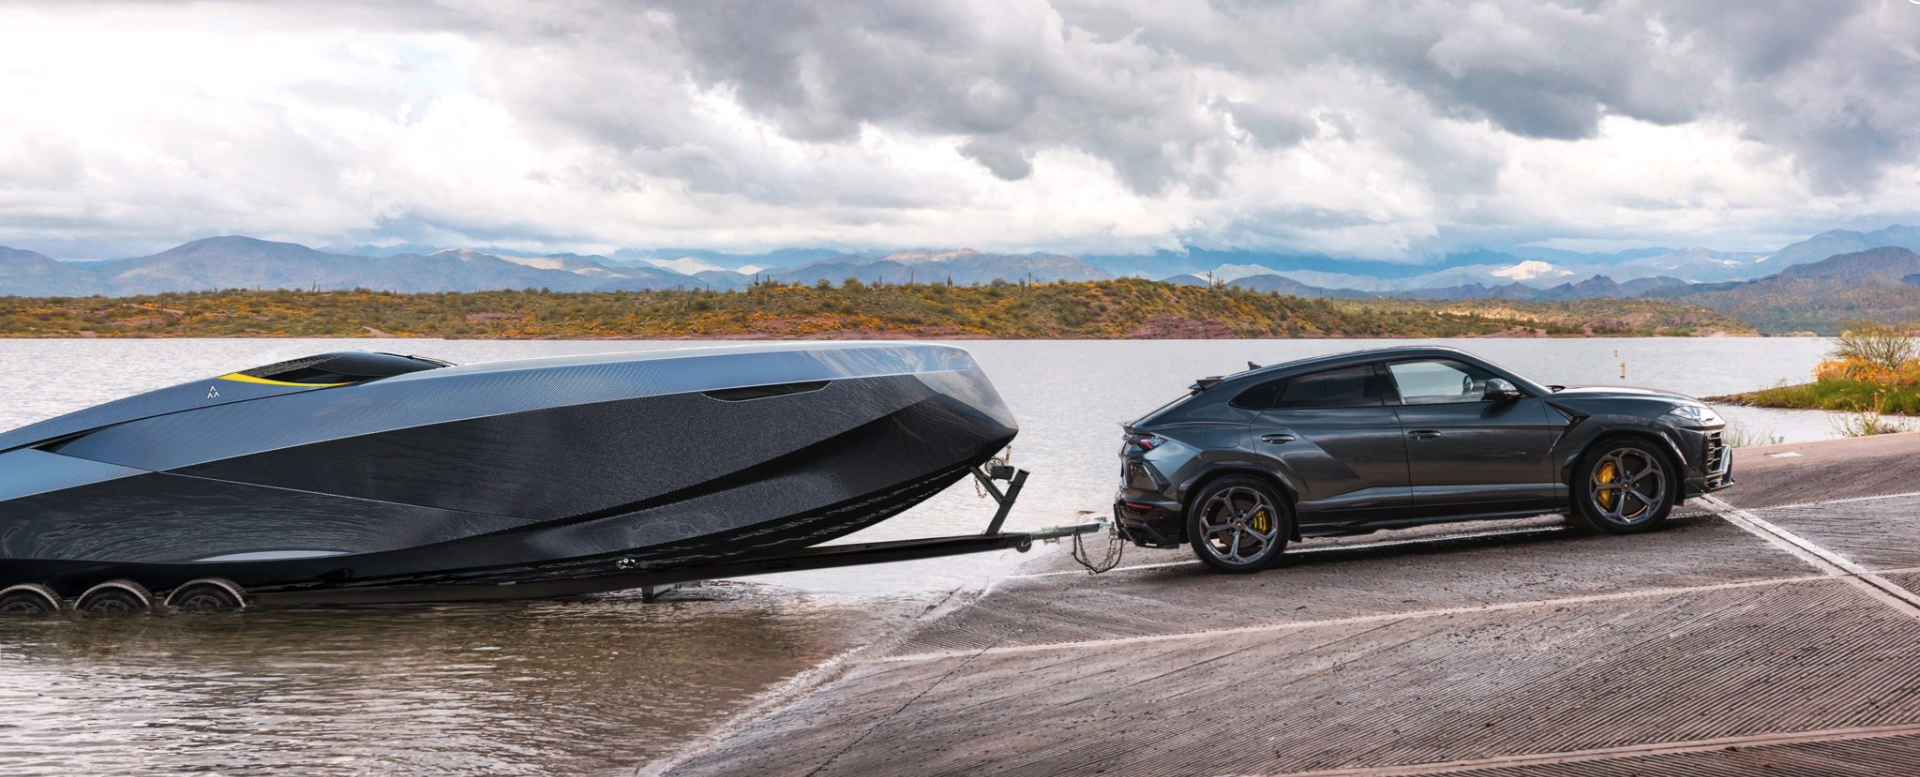 Lamborghini-inspired boat concept from Italian Design ...